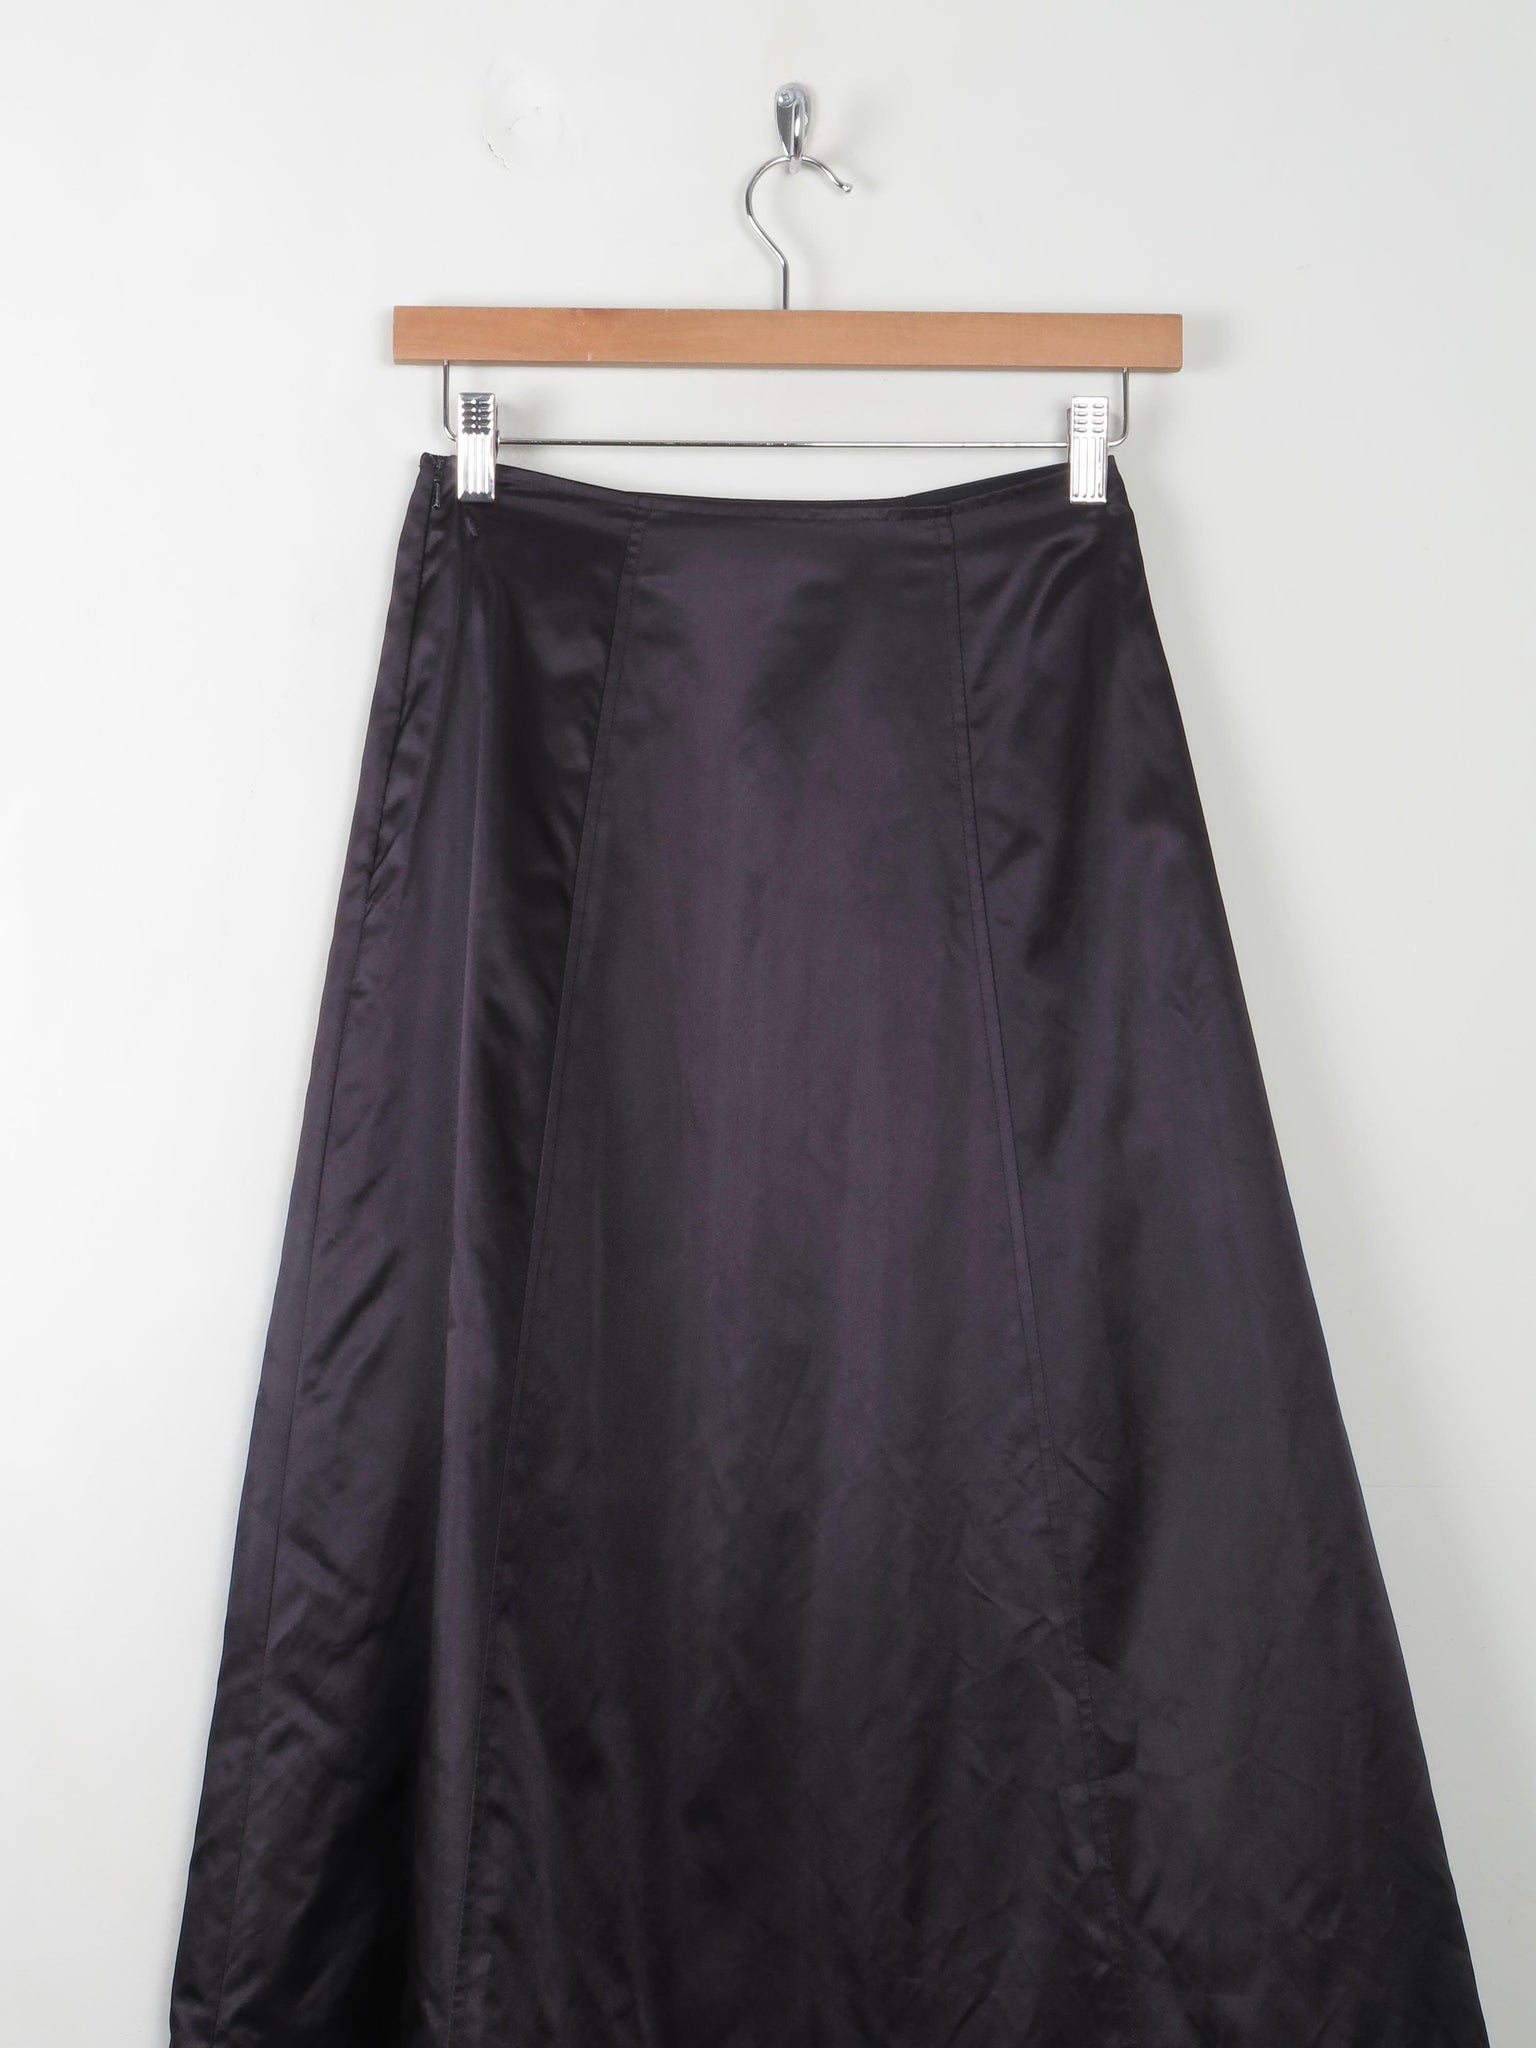 Vintage Black Satin Full Skirt 25"W - The Harlequin